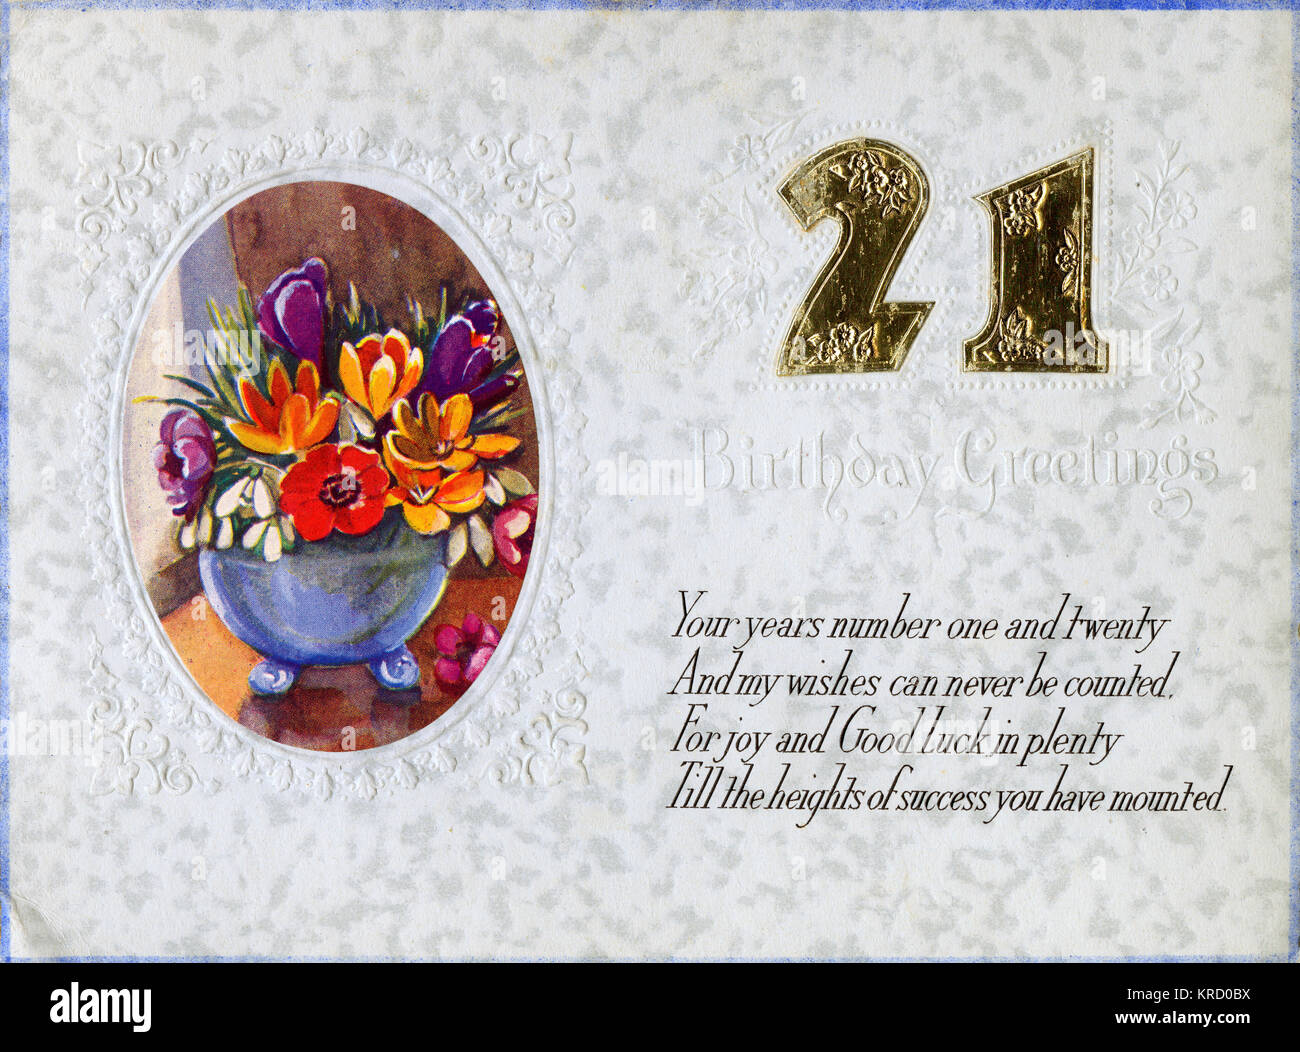 Un 21e anniversaire carte avec un vase de fleurs colorées dans un cadre ovale. Date : 1936 Banque D'Images